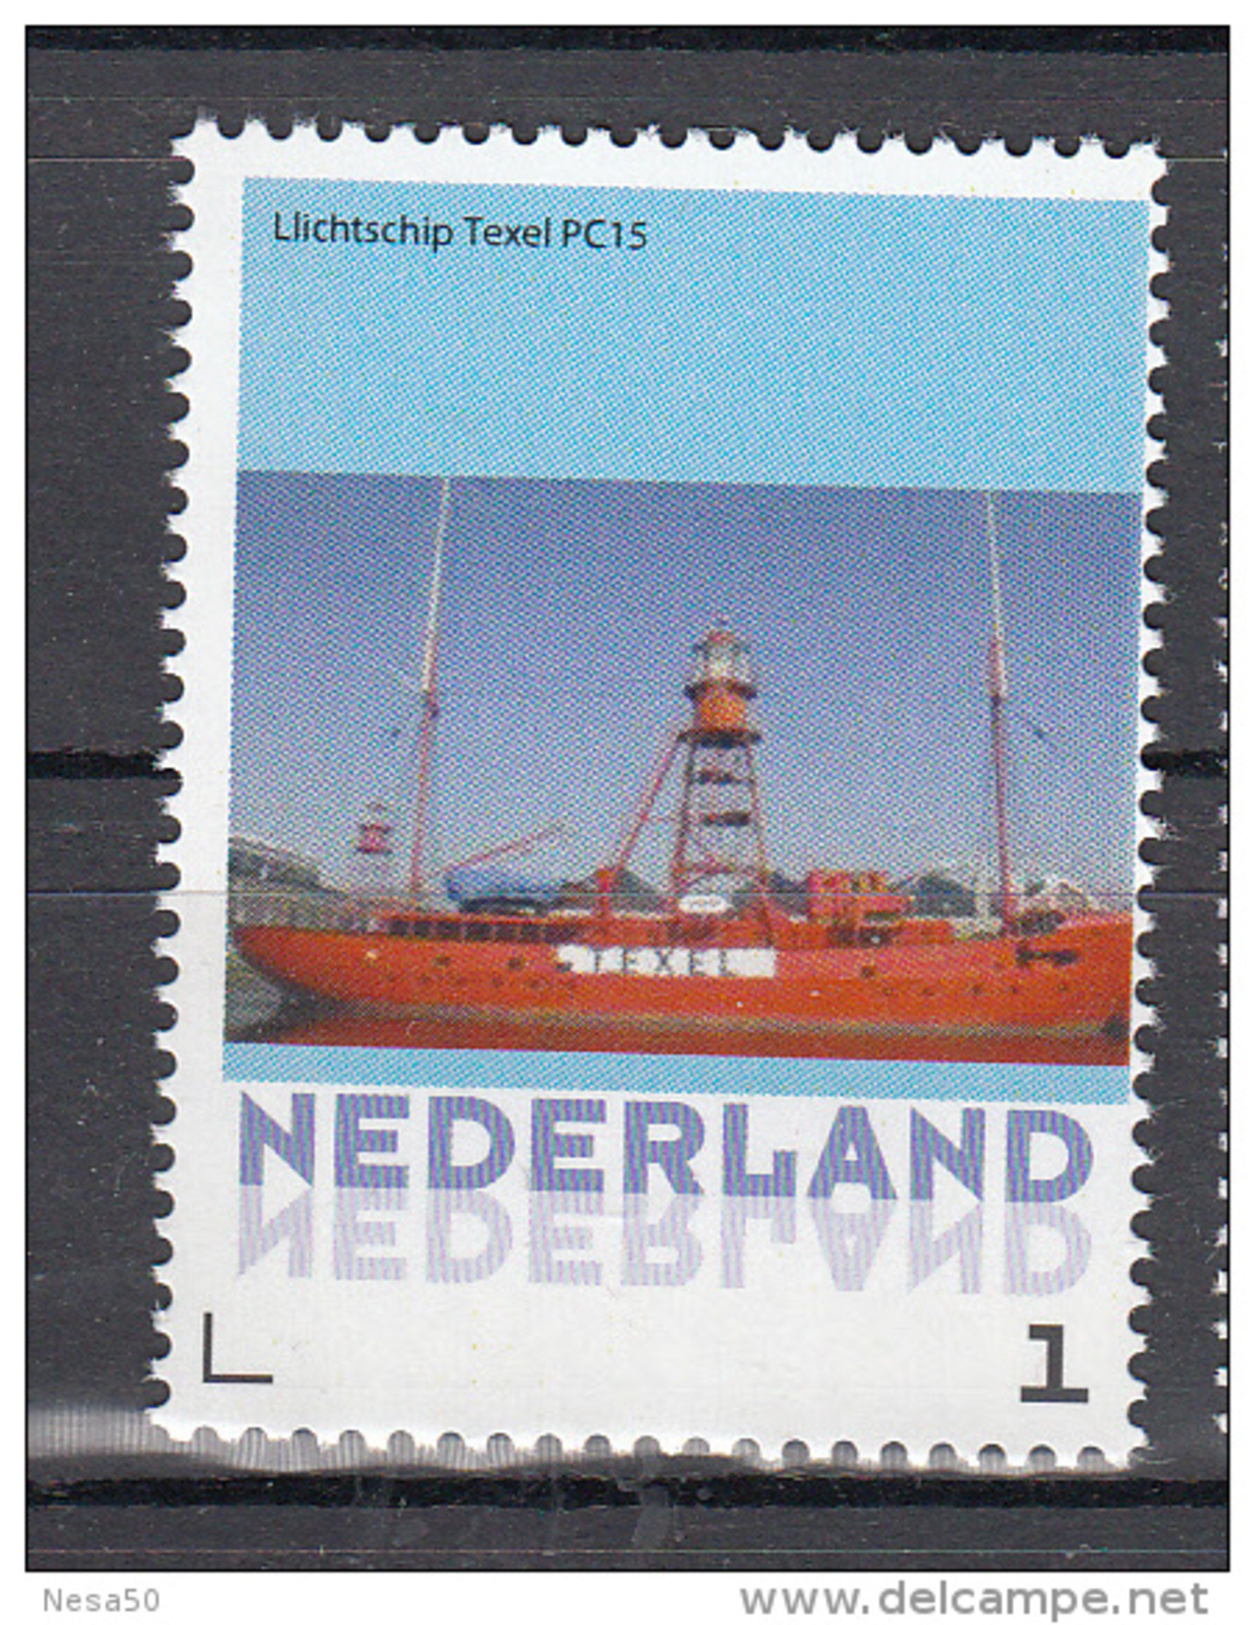 Nederland 2015 Persoonlijke Zegel: Lighthouse, Vuurtoren: Lichtschip Texel , Lightschip - Phares